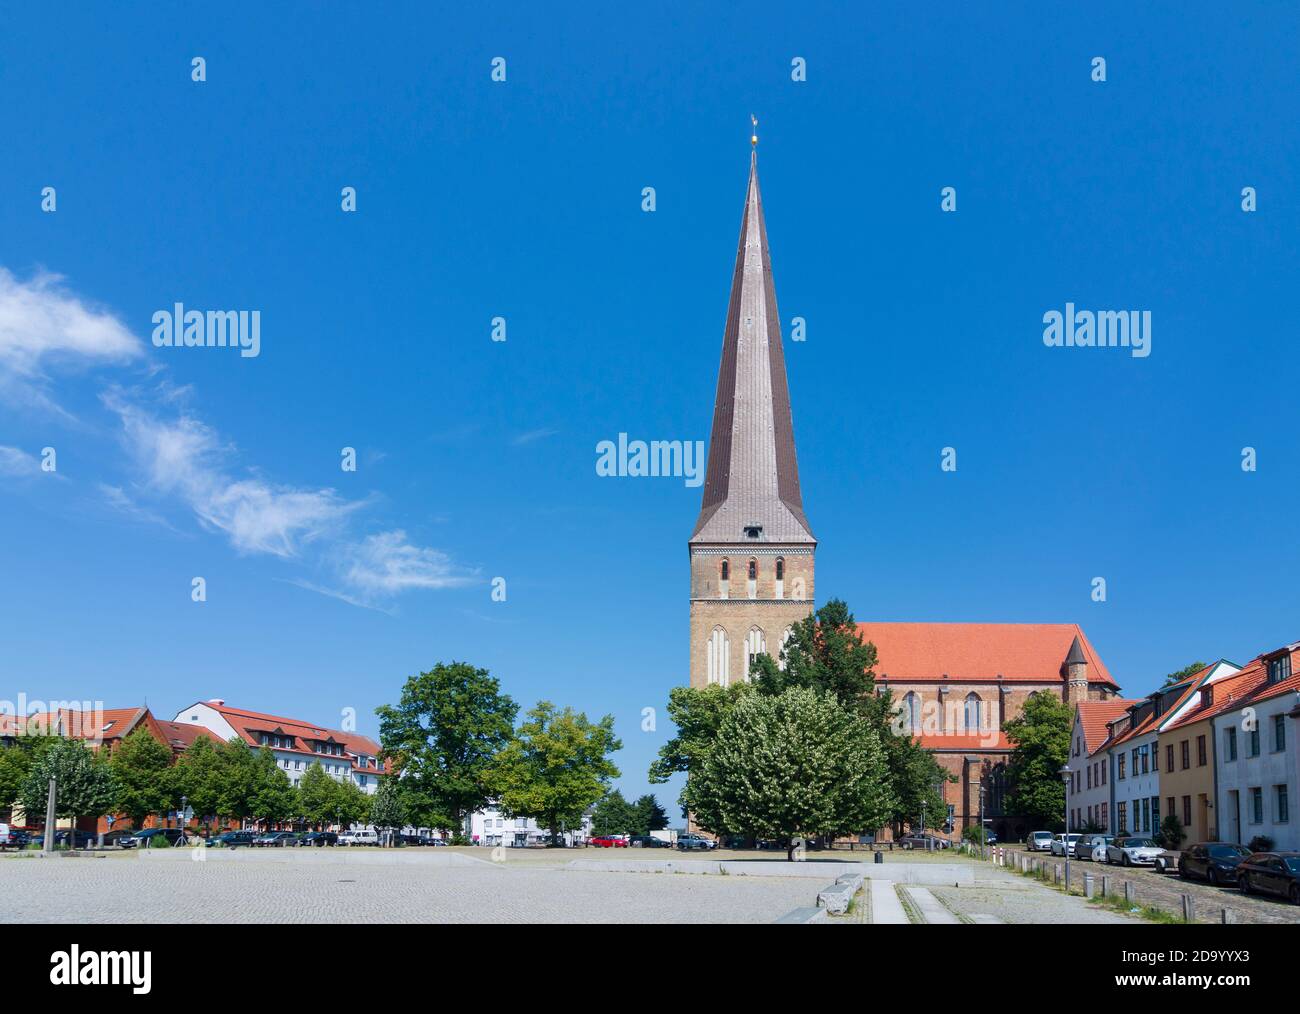 Rostock: eglise Petrikirche, place Alter Markt, Ostsee (Mer Baltique), Mecklenburg-Vorpommern, Allemagne Banque D'Images